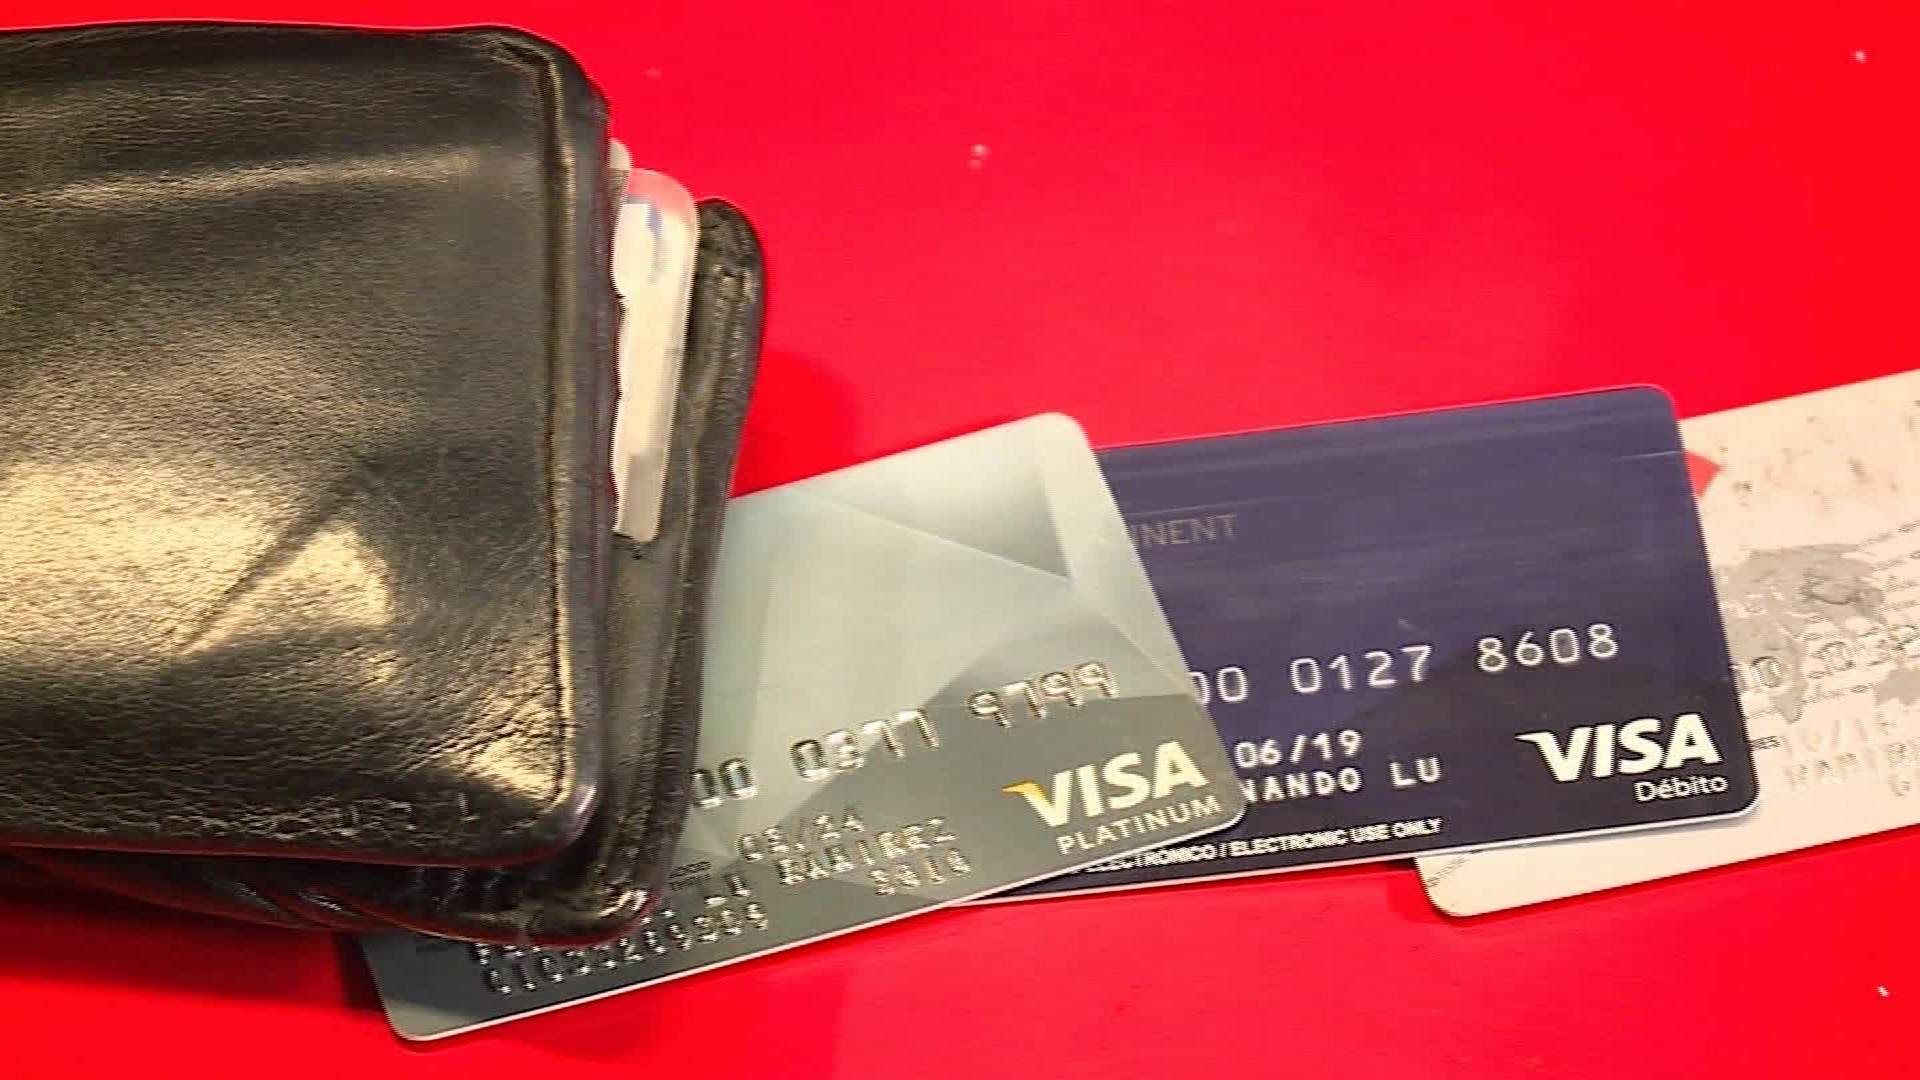 Comercios argentinos sufren cuando con tarjeta crédito - CNN Video